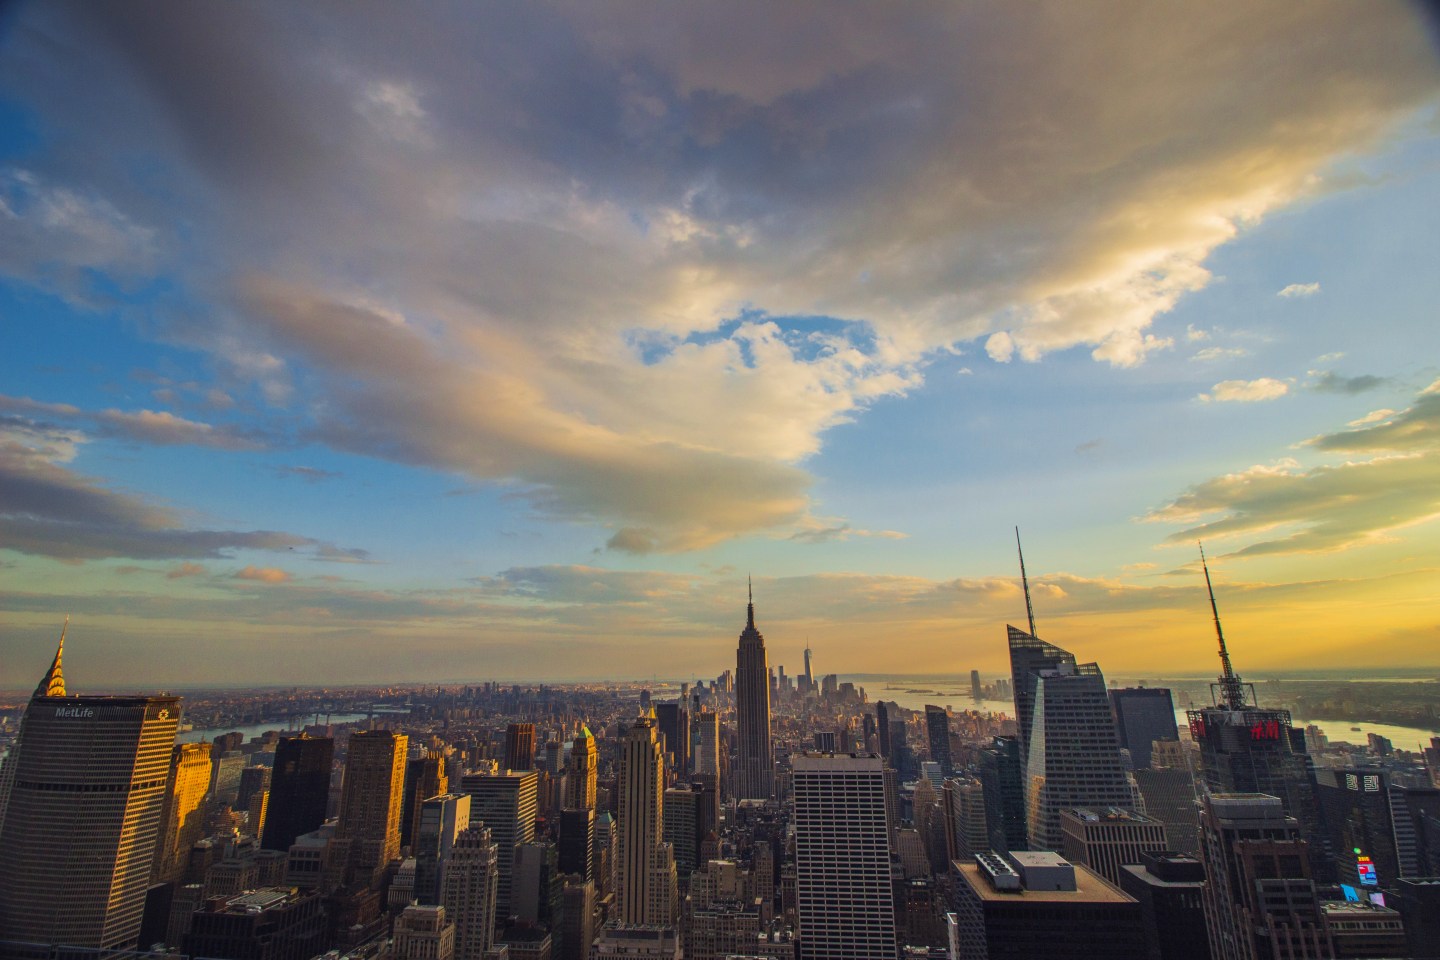 De jolies photos de voyage grâce à la lumière d'un soleil couchant. Ici vue des toits sur New York.